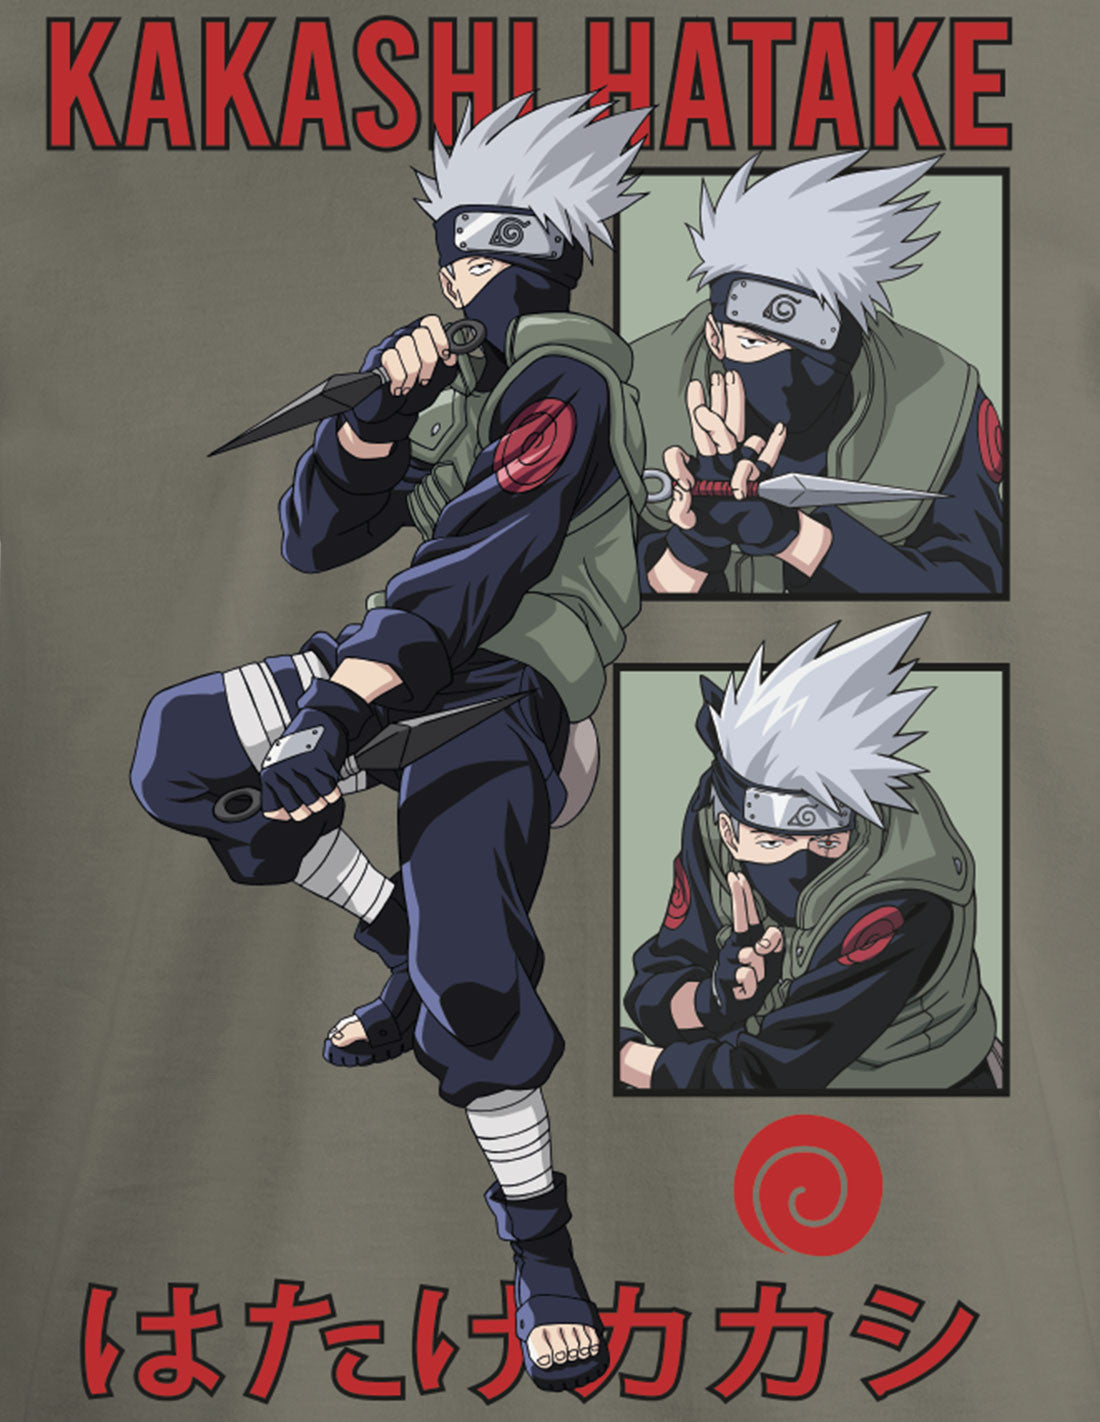 T-shirt Naruto - Shinobi of Konohagakure